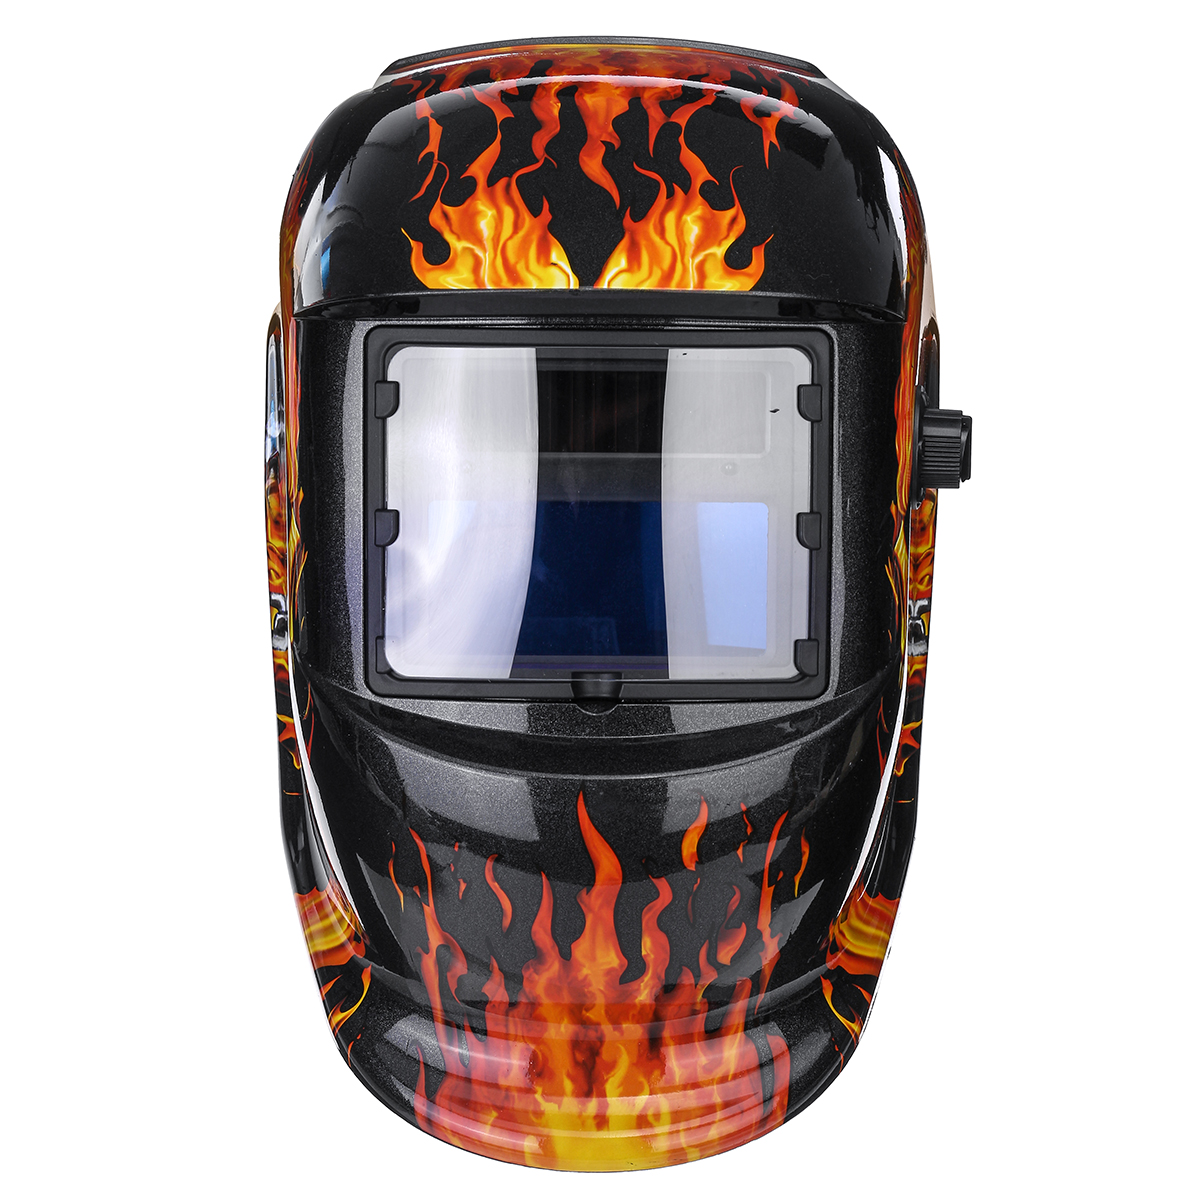 Auto Darkening Solar Welders Welding Helmet Mask With Grinding Function Red 04